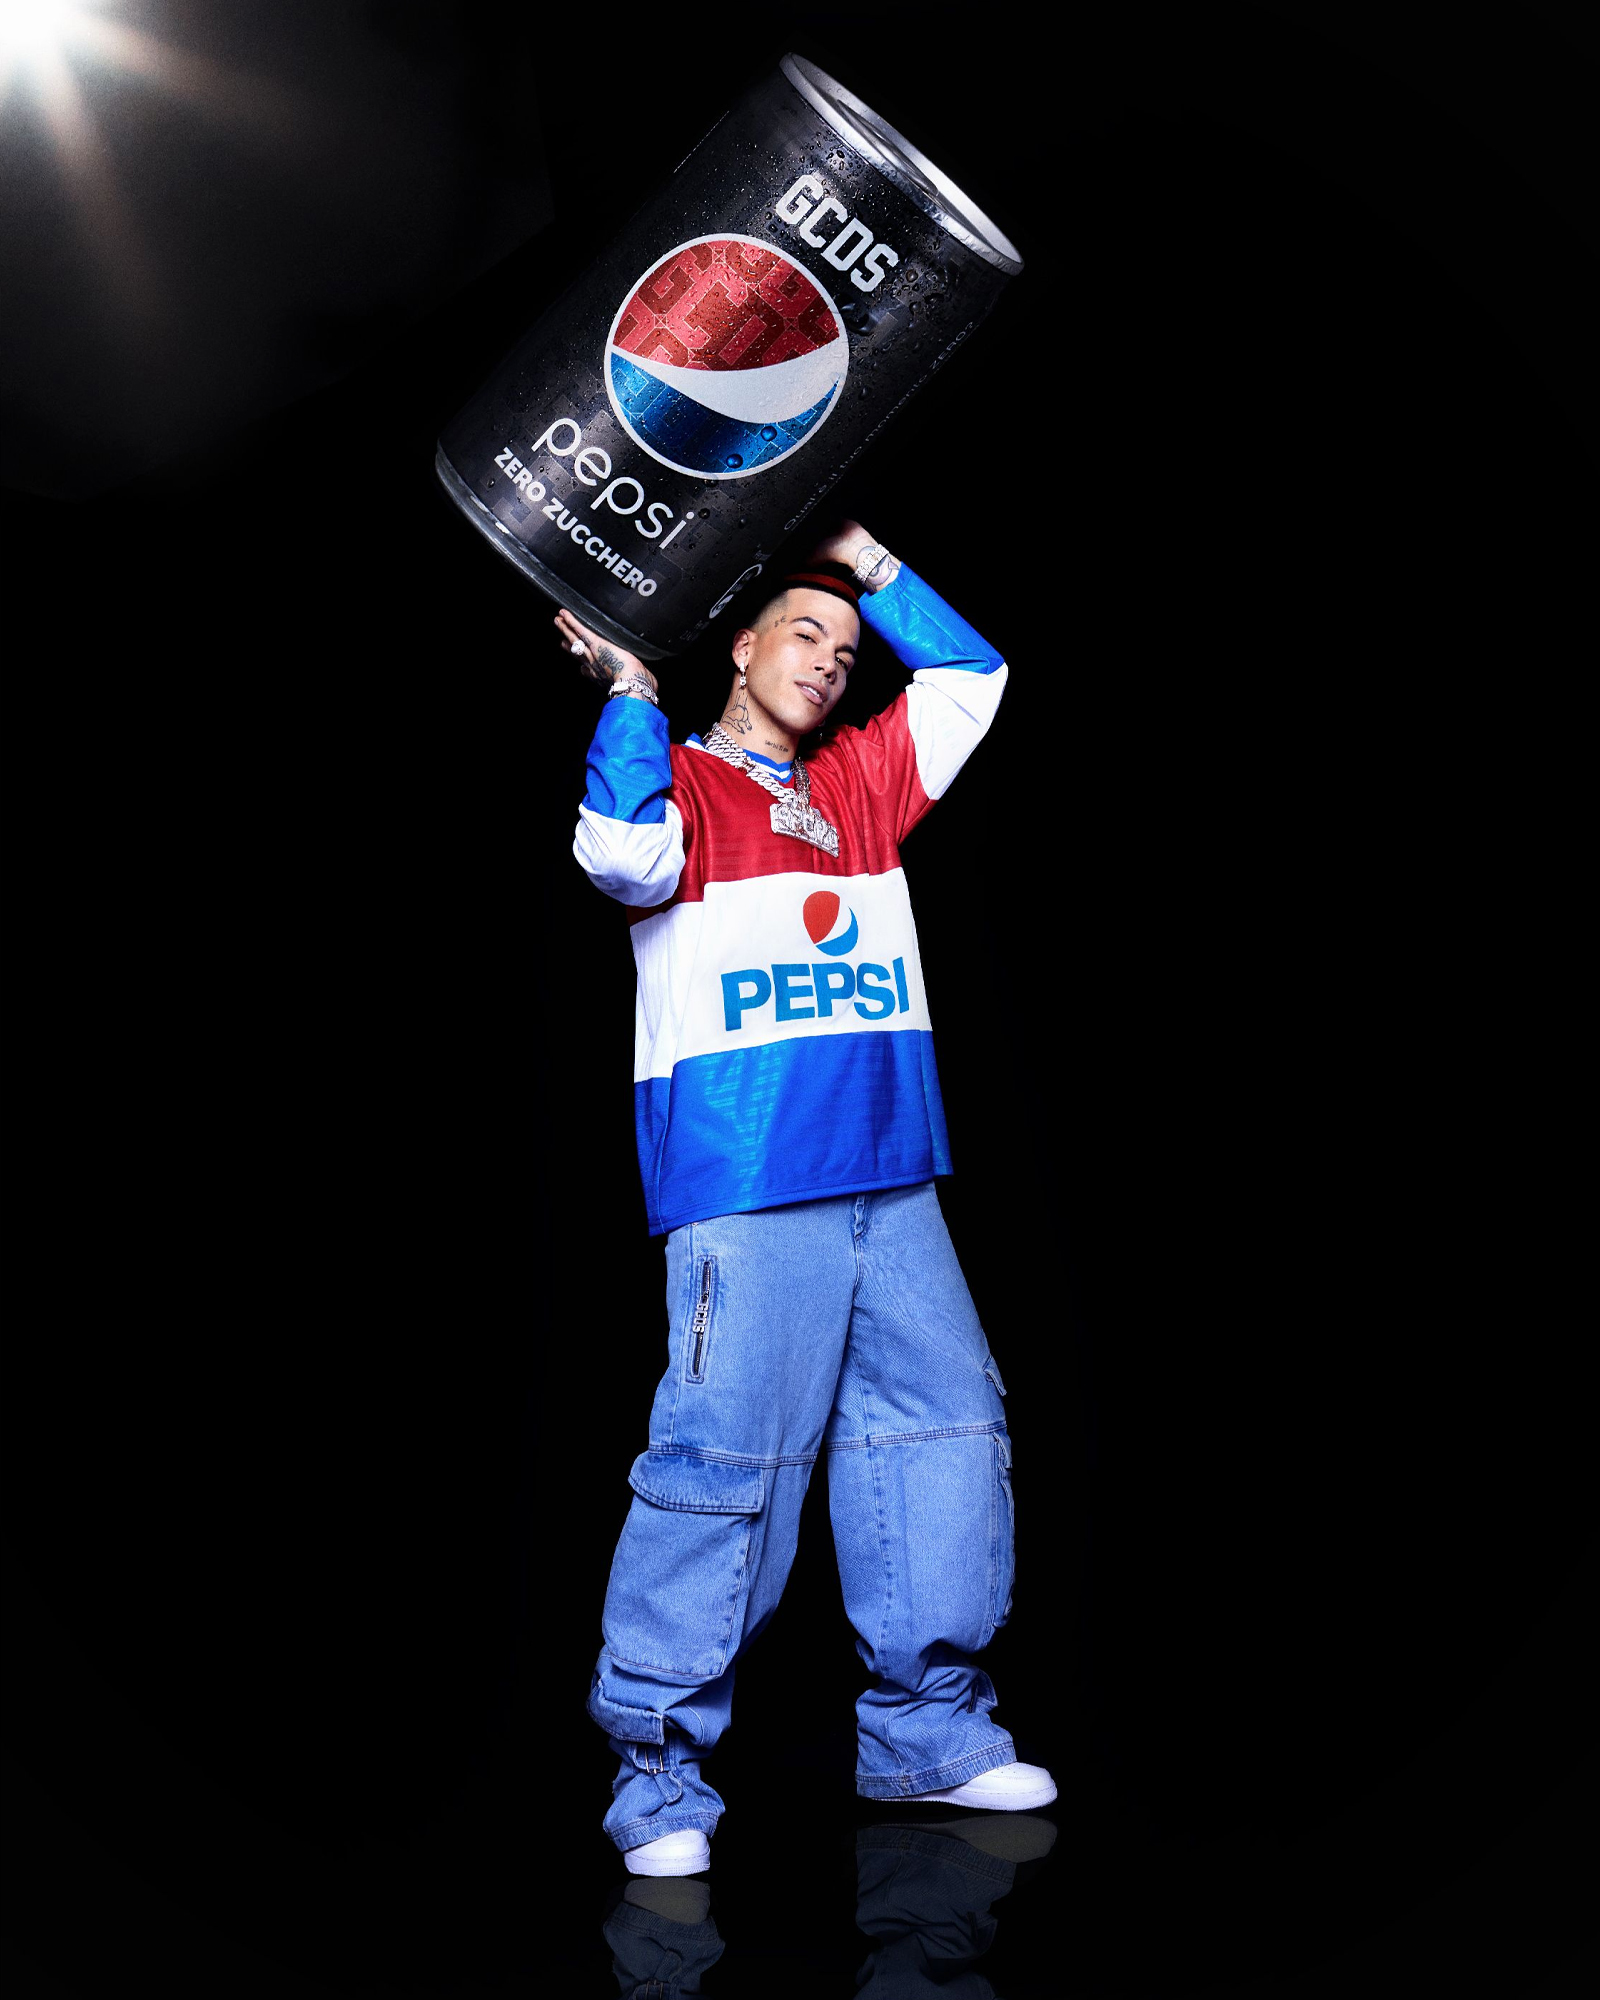 GCDS Pepsi Zero Sfera Ebbasta Collaborazione